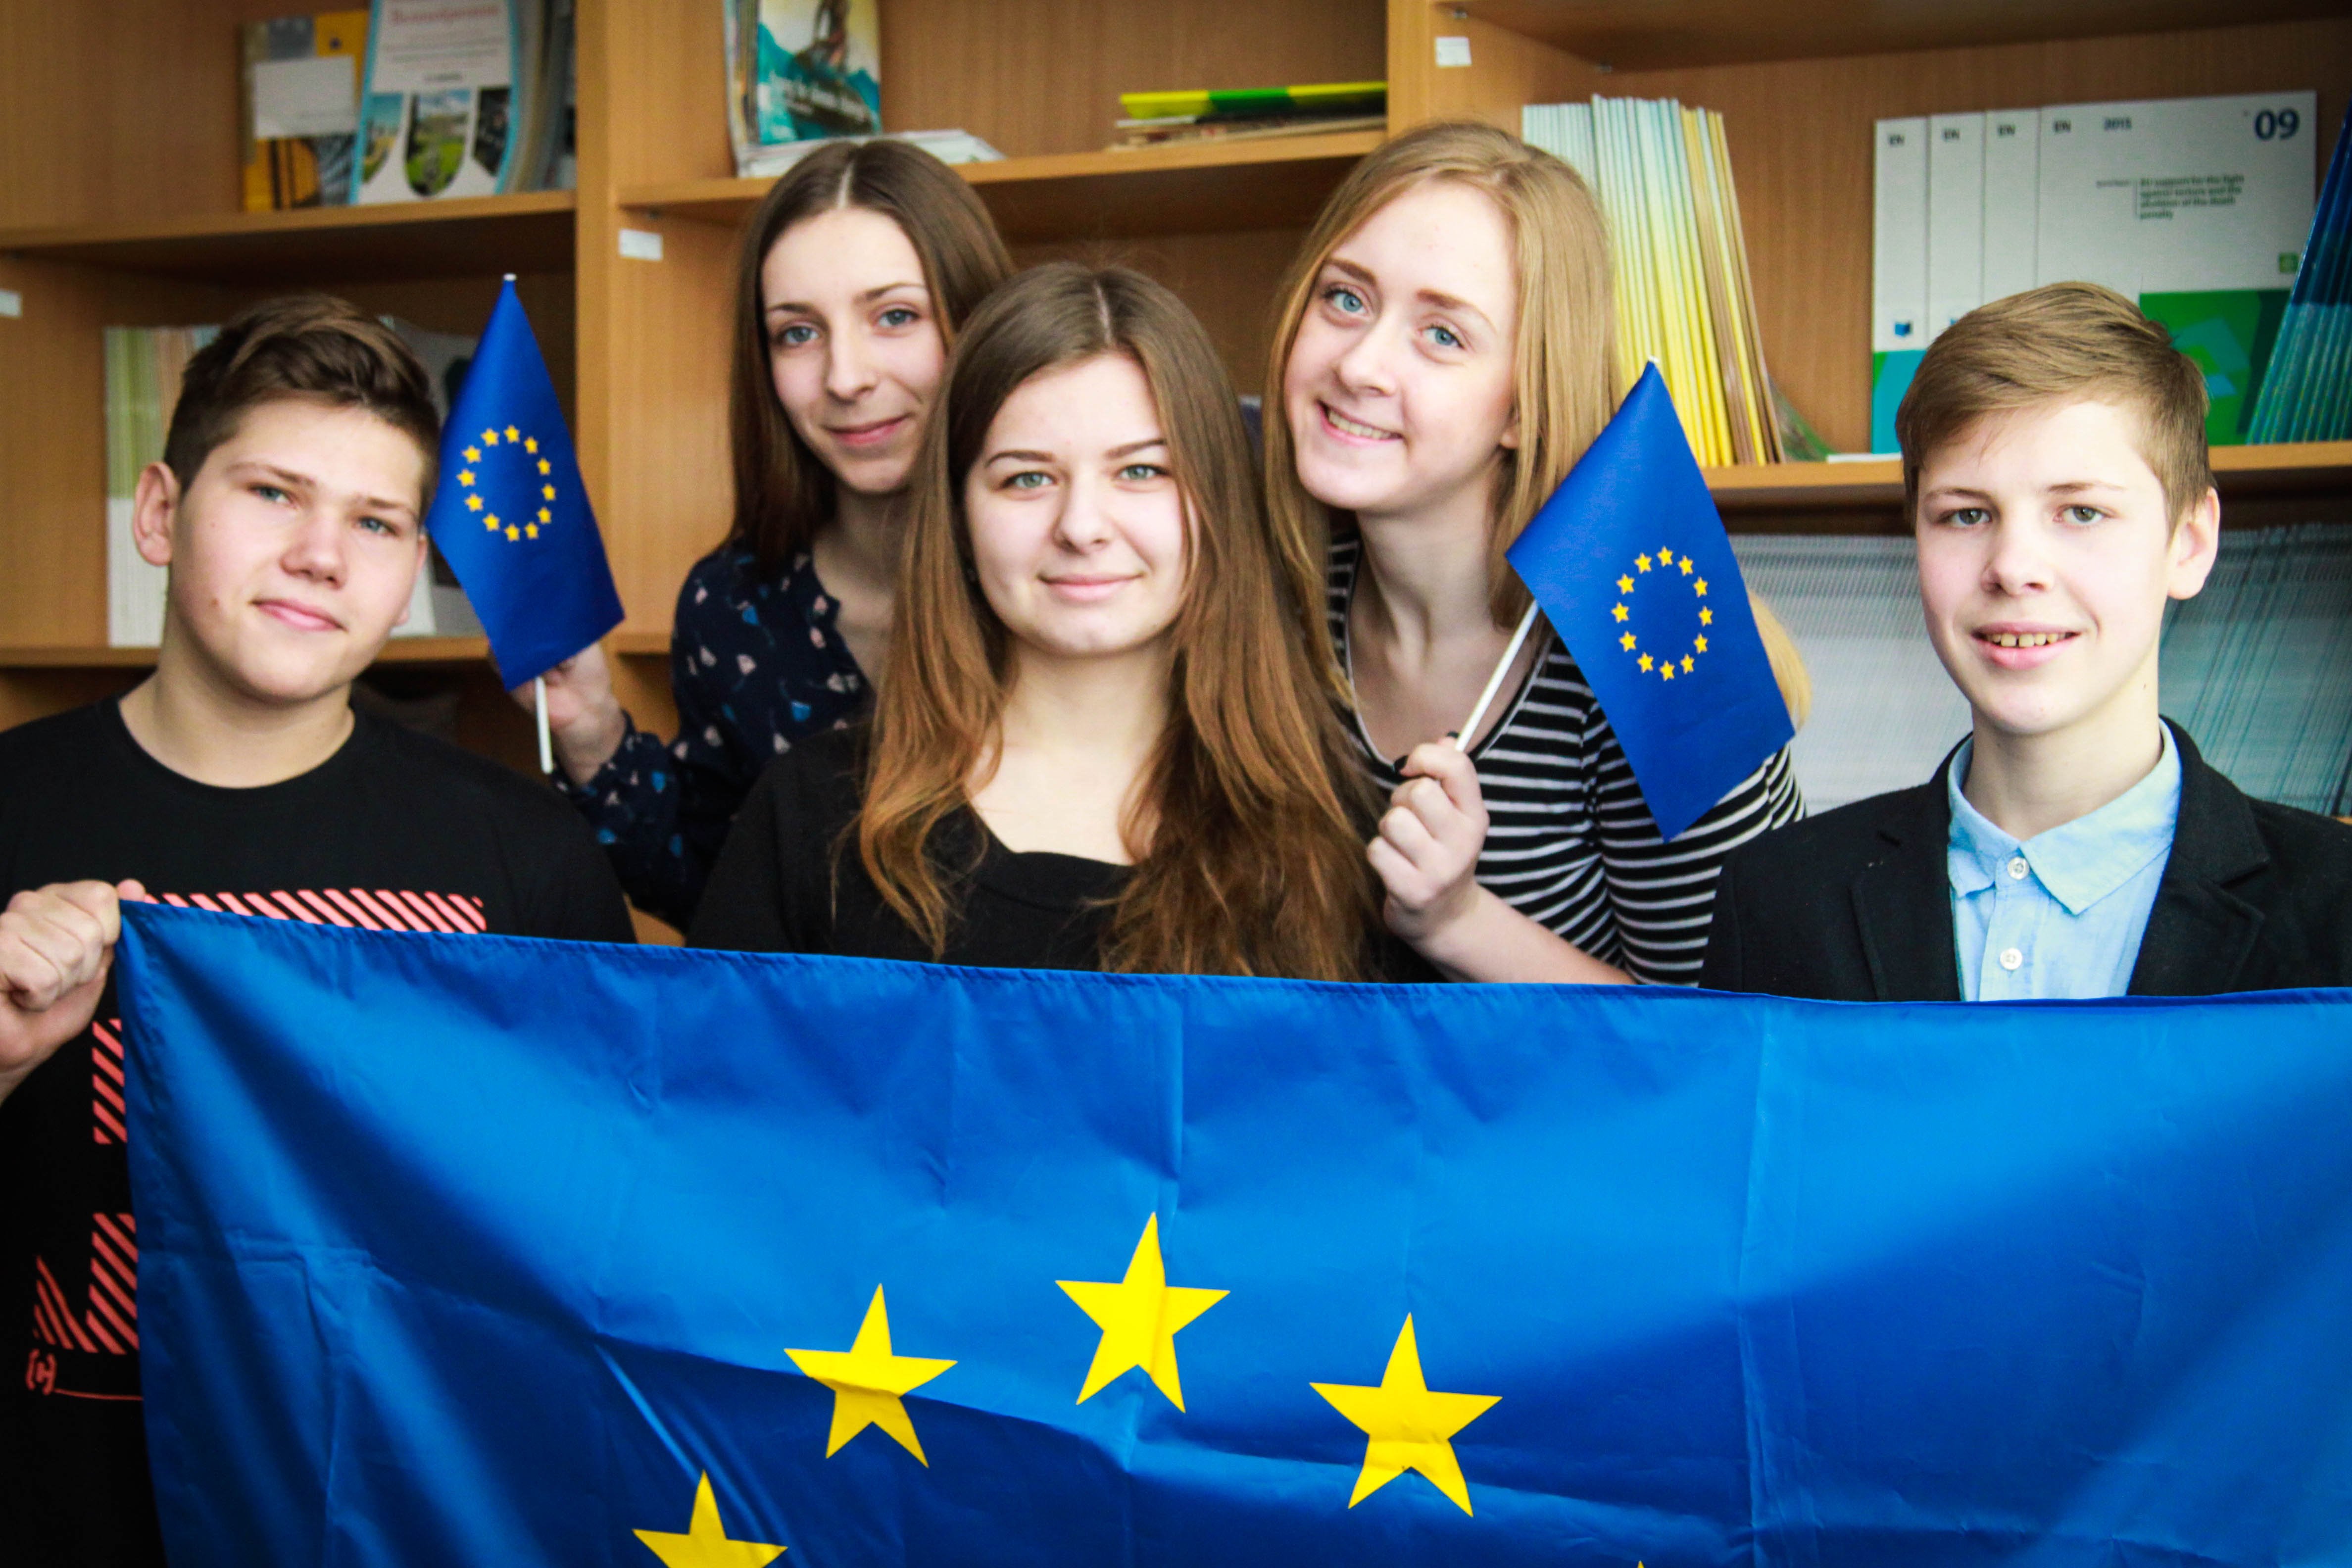 Інформаційний центр ЄС запрошує молодь до участі у брейн-рингу на тему Європейського Союзу!